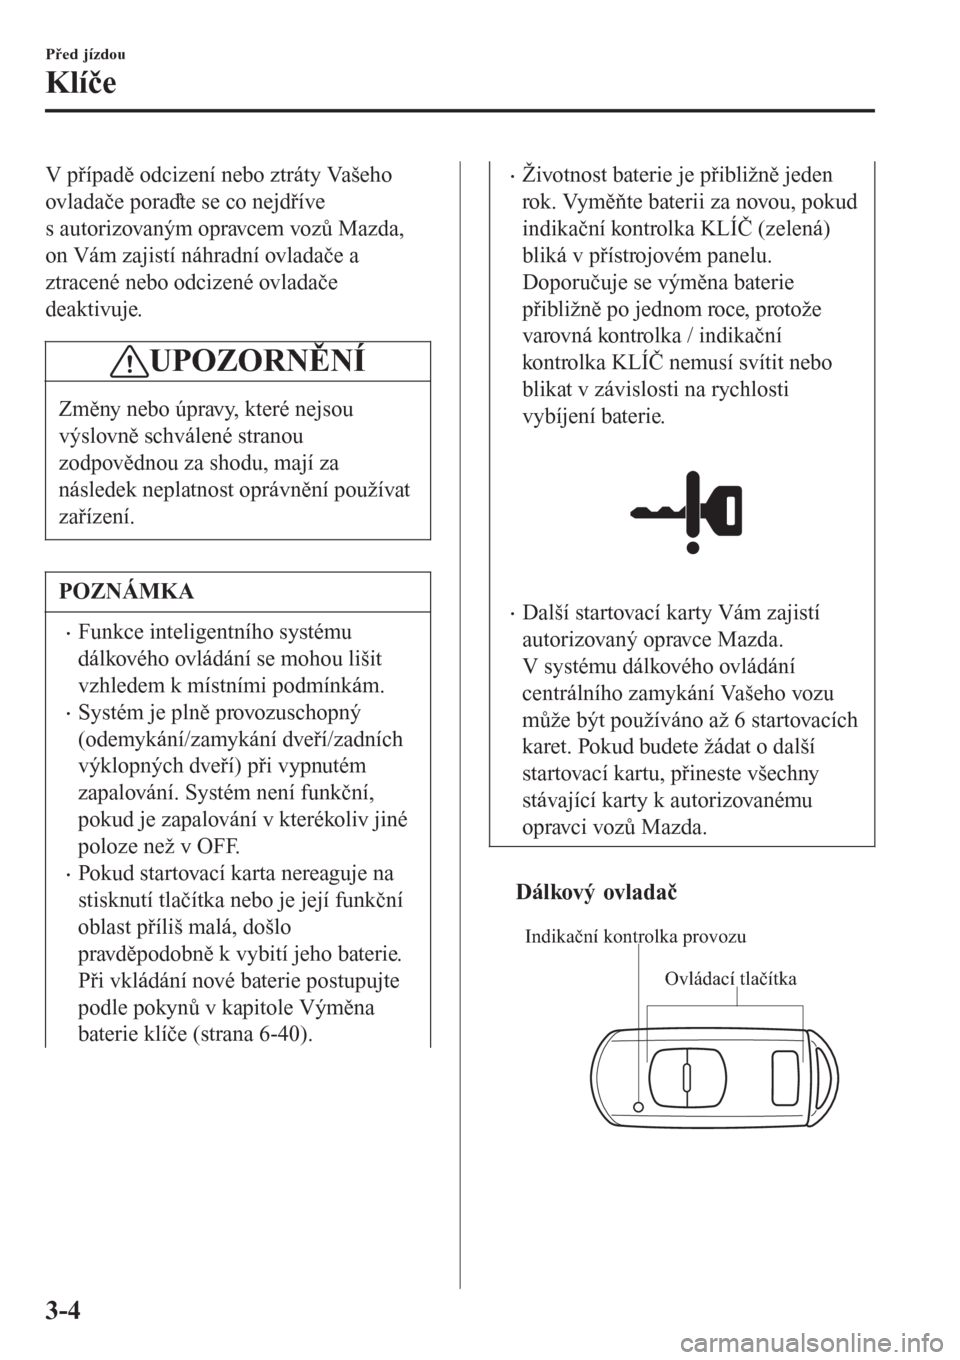 MAZDA MODEL CX-3 2015  Návod k obsluze (in Czech) V případě odcizení nebo ztráty Vašeho
ovladače poraďte se co nejdříve
s autorizovaným opravcem vozů Mazda,
on Vám zajistí náhradní ovladače a
ztracené nebo odcizené ovladače
deakti